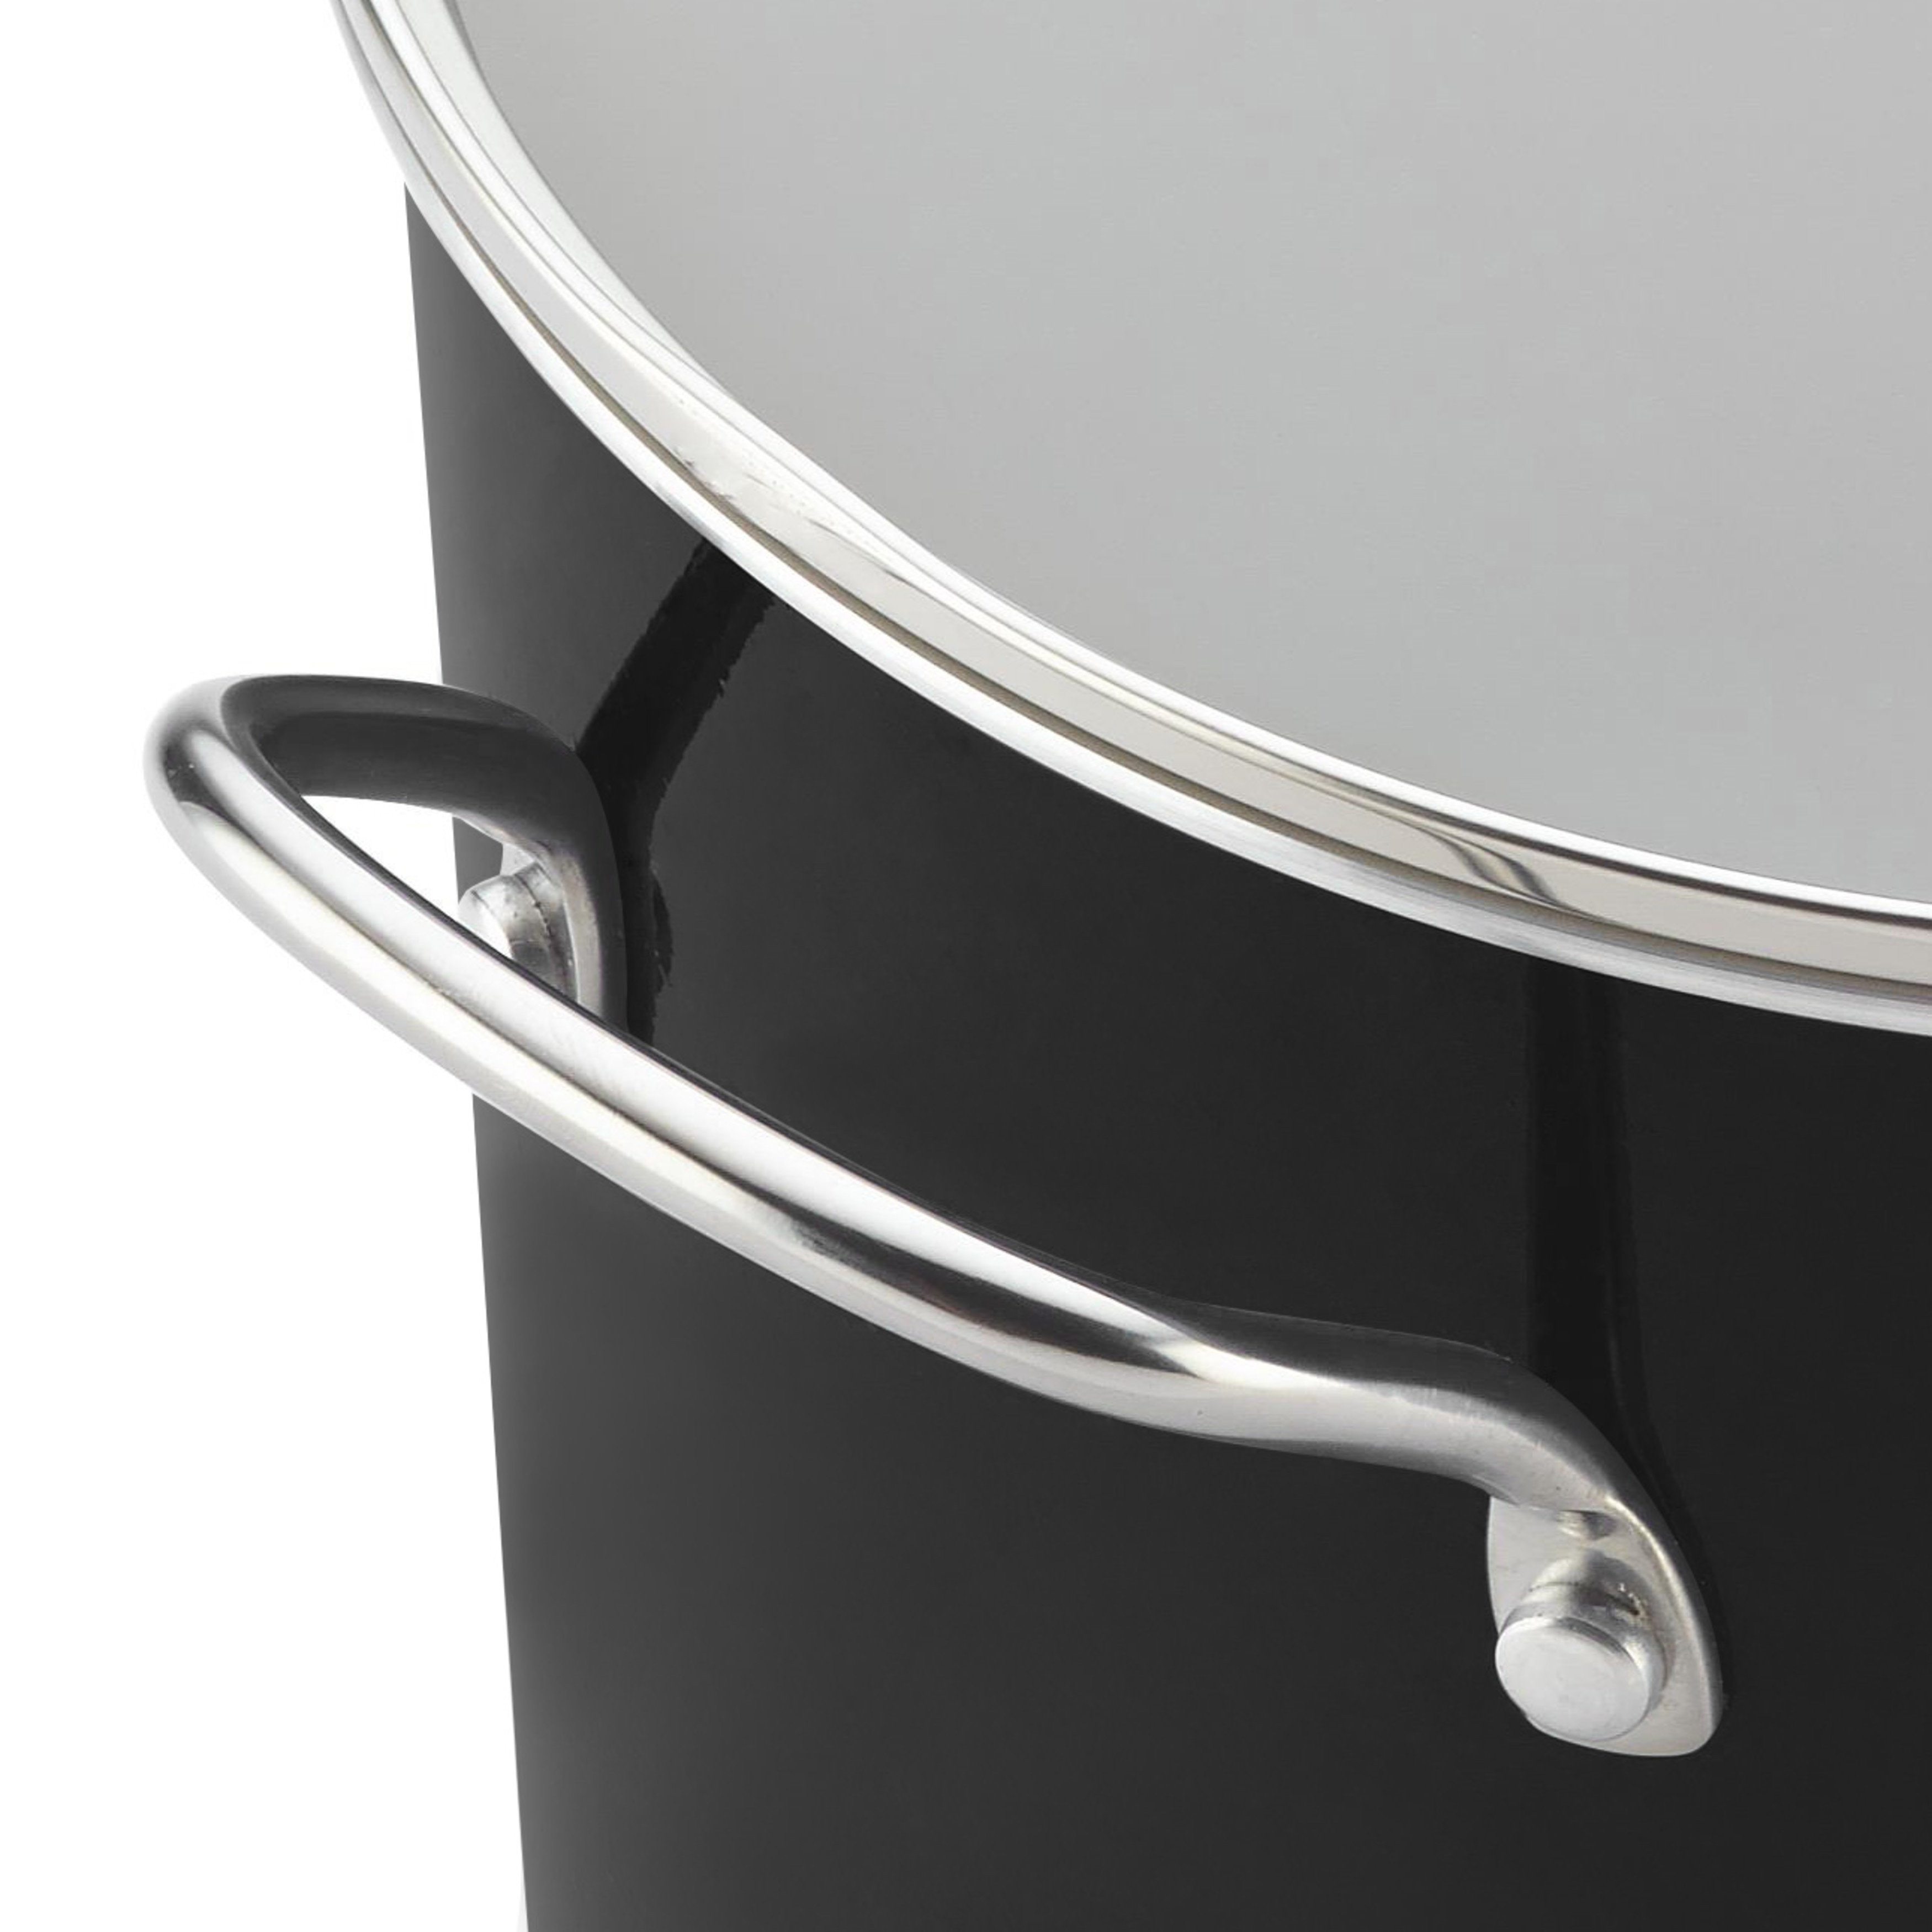 Farberware Aluminum 8-Quart Nonstick Stockpot, Black